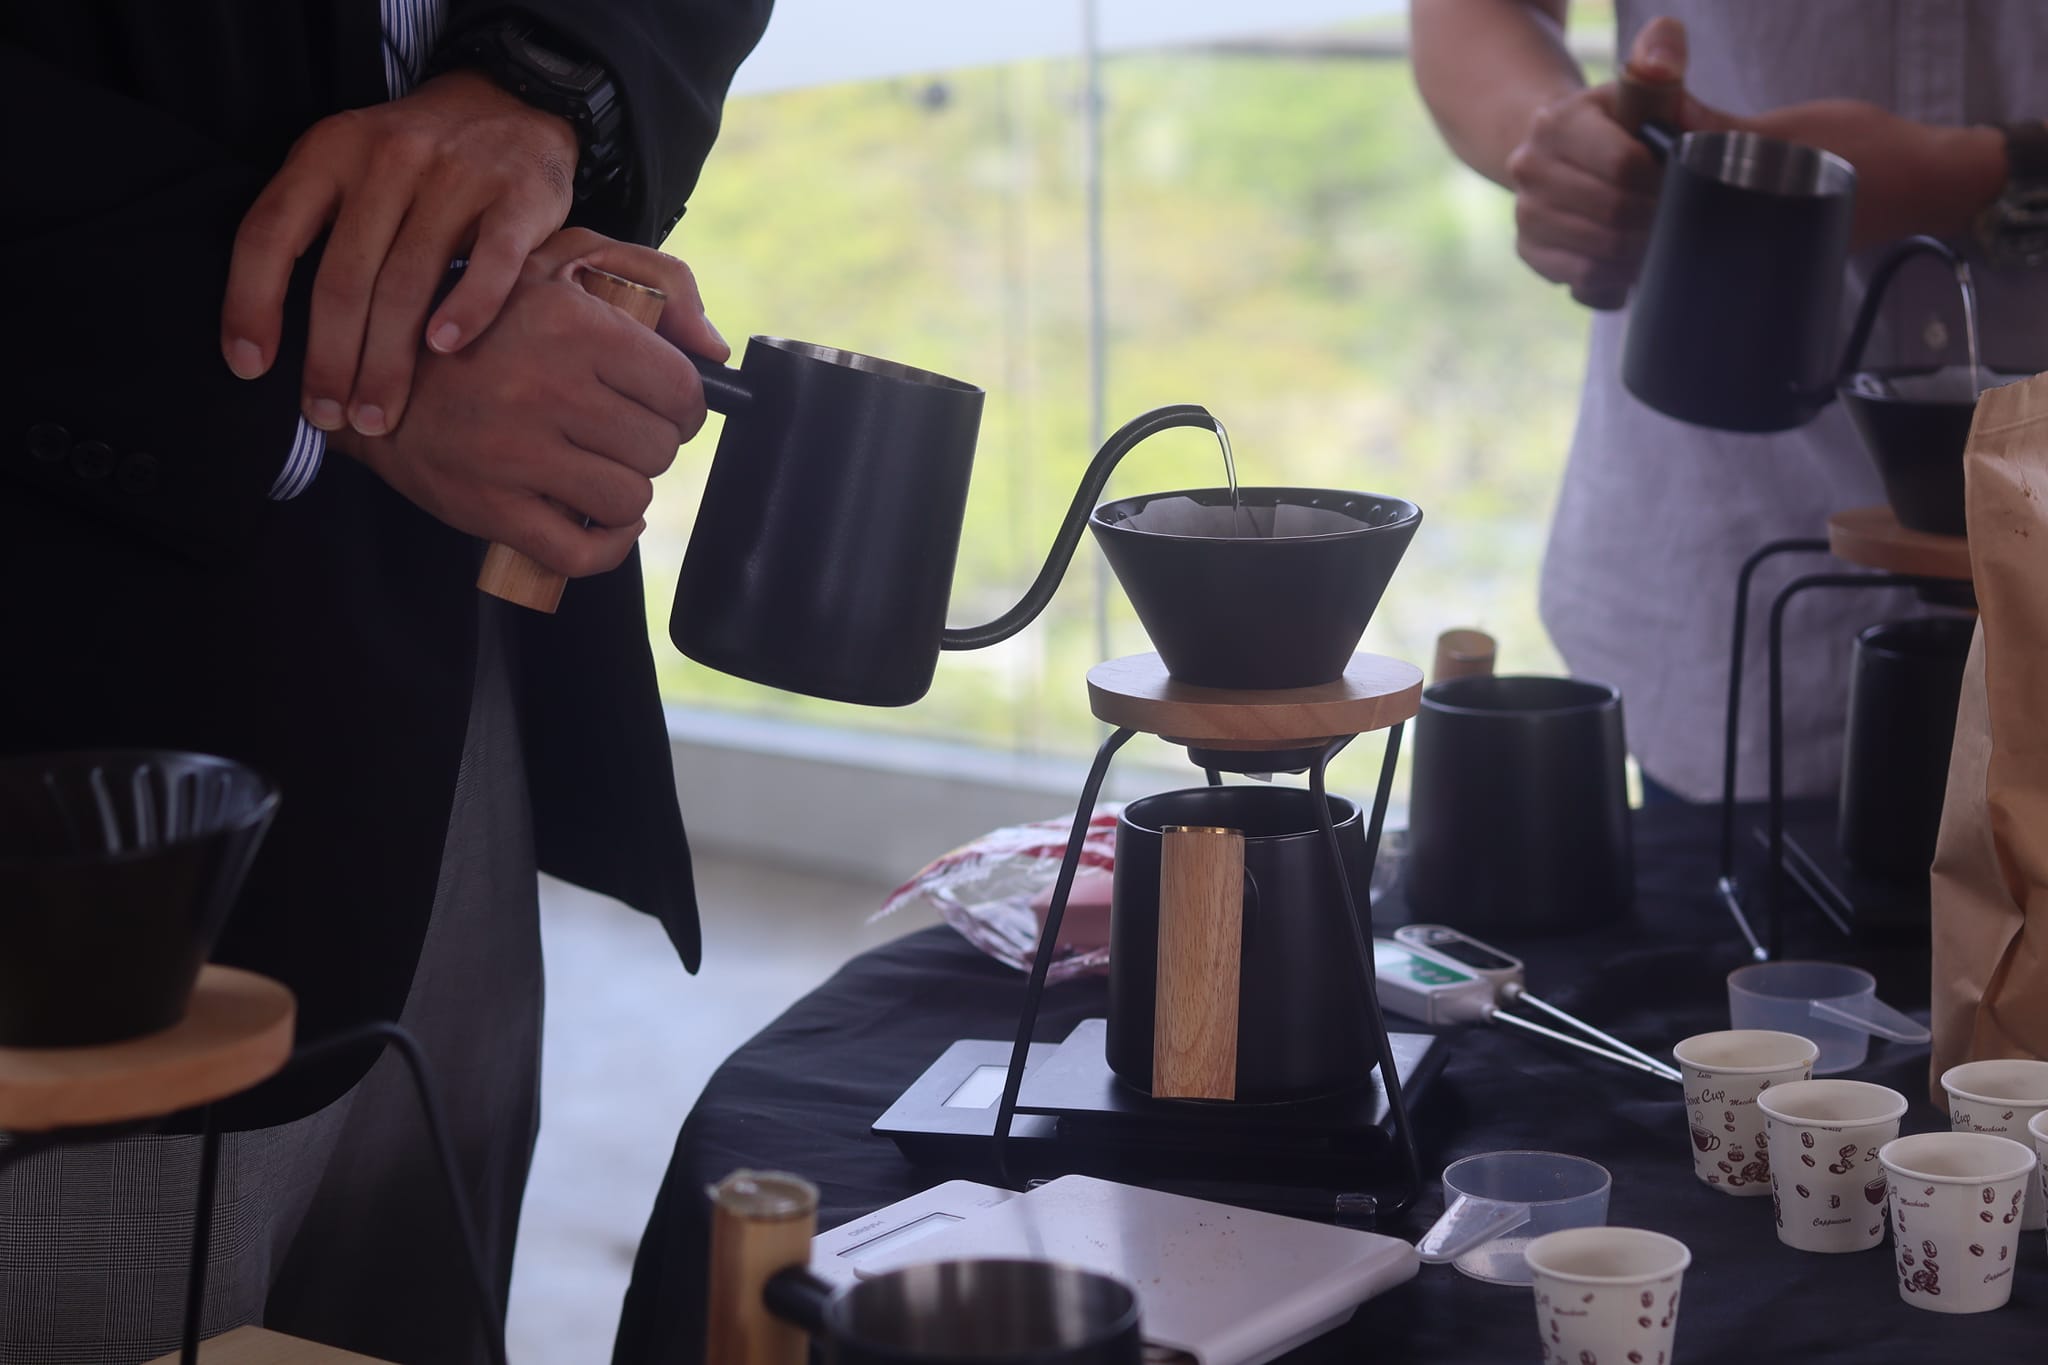 會中也教導咖啡的特性以及如何做出好喝的咖啡。(圖/長榮大學臉書)